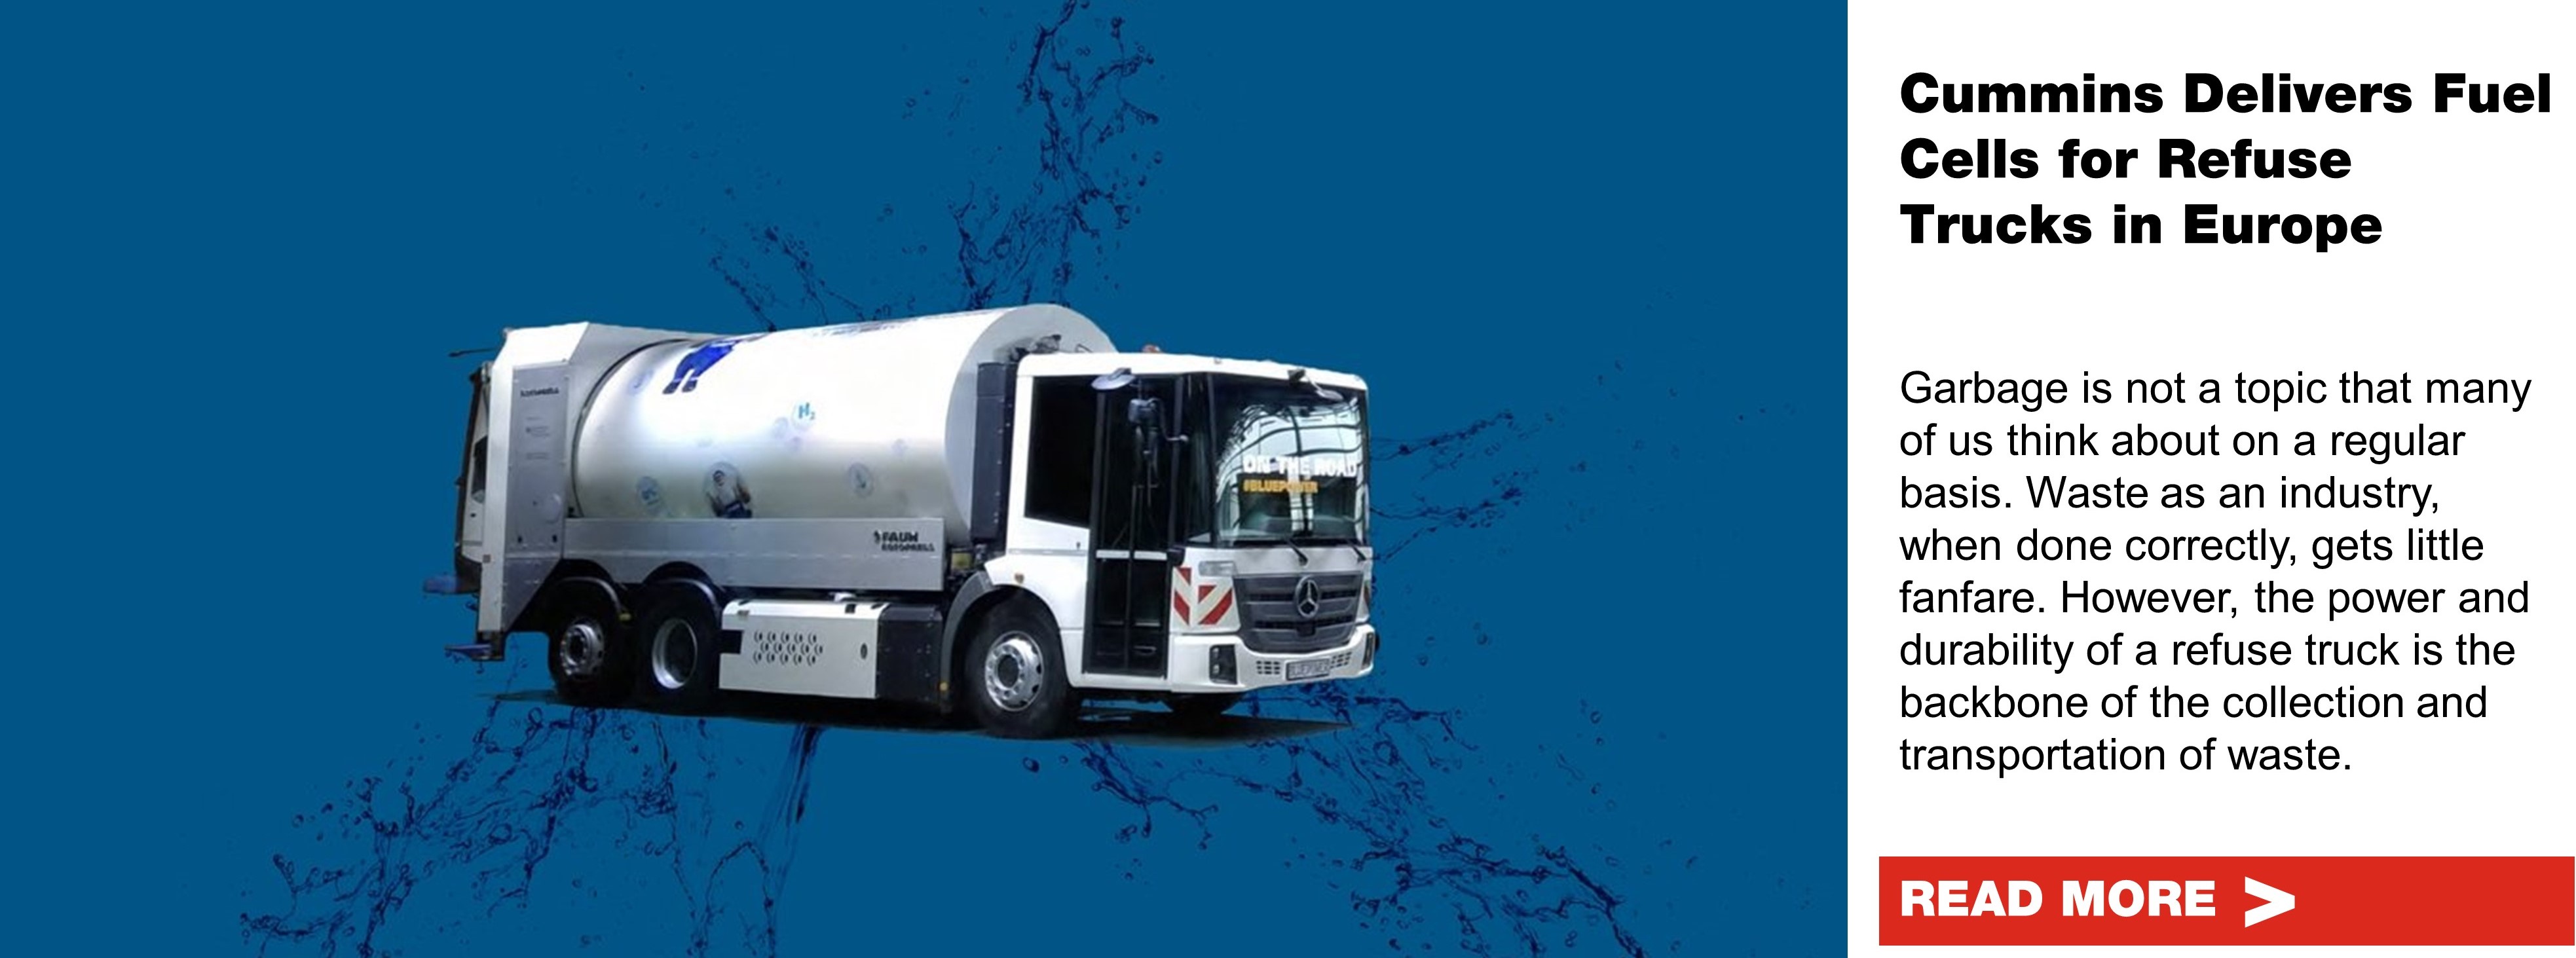 Cummins suministra células de combustible para camiones de recolección de residuos en Europa